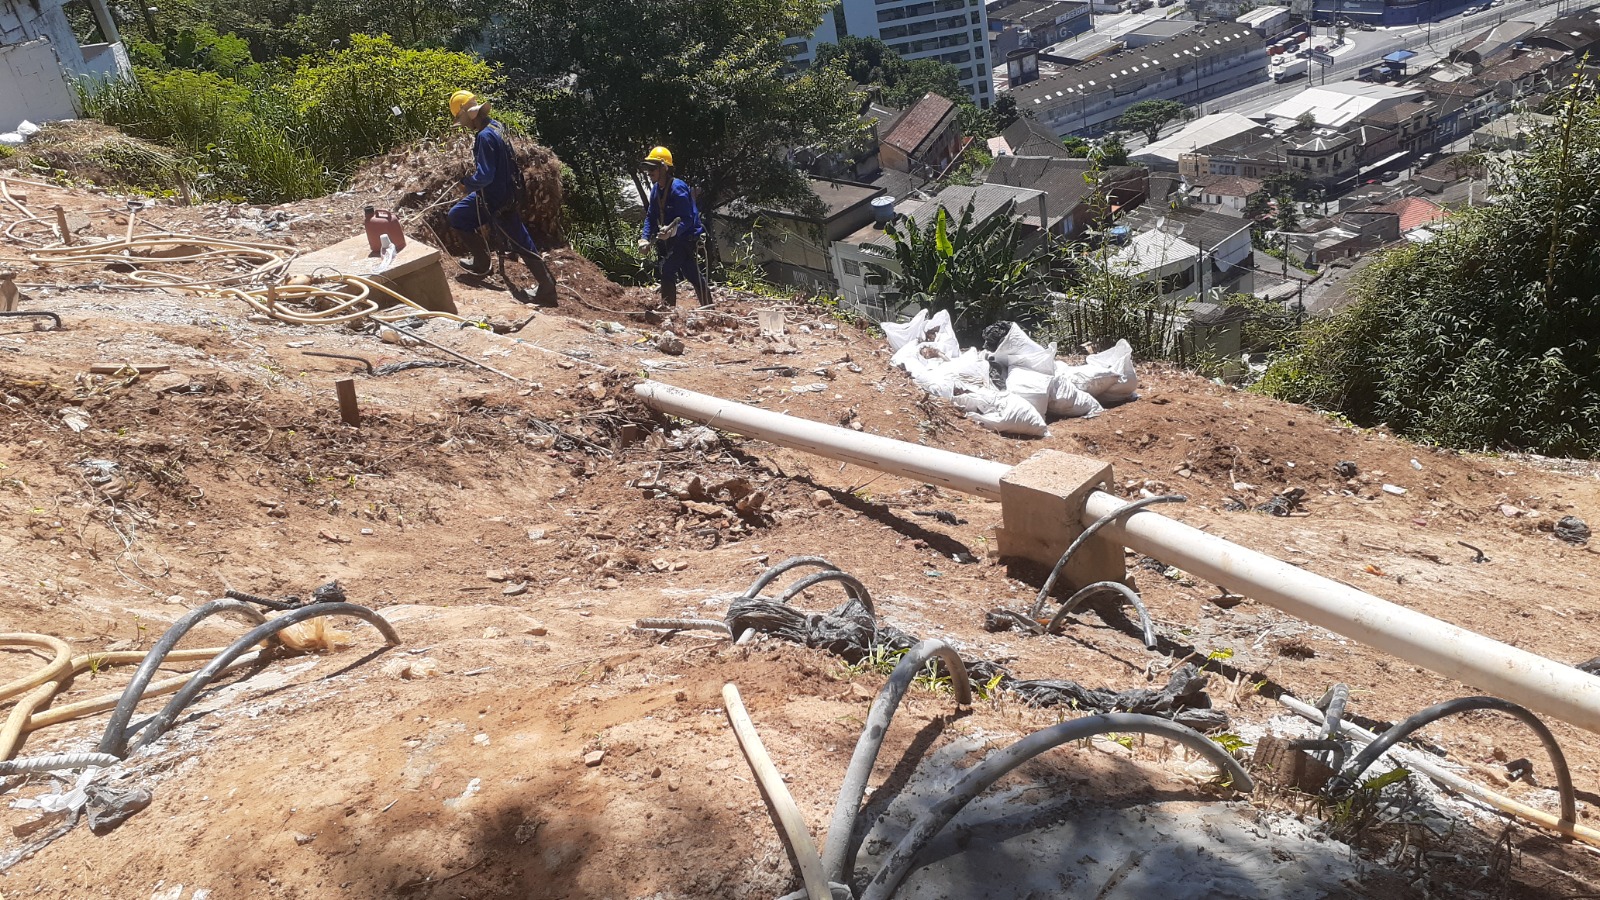 Reconstrução da encosta do Morro do Pacheco começa com remoção de lixo | Jornal da Orla